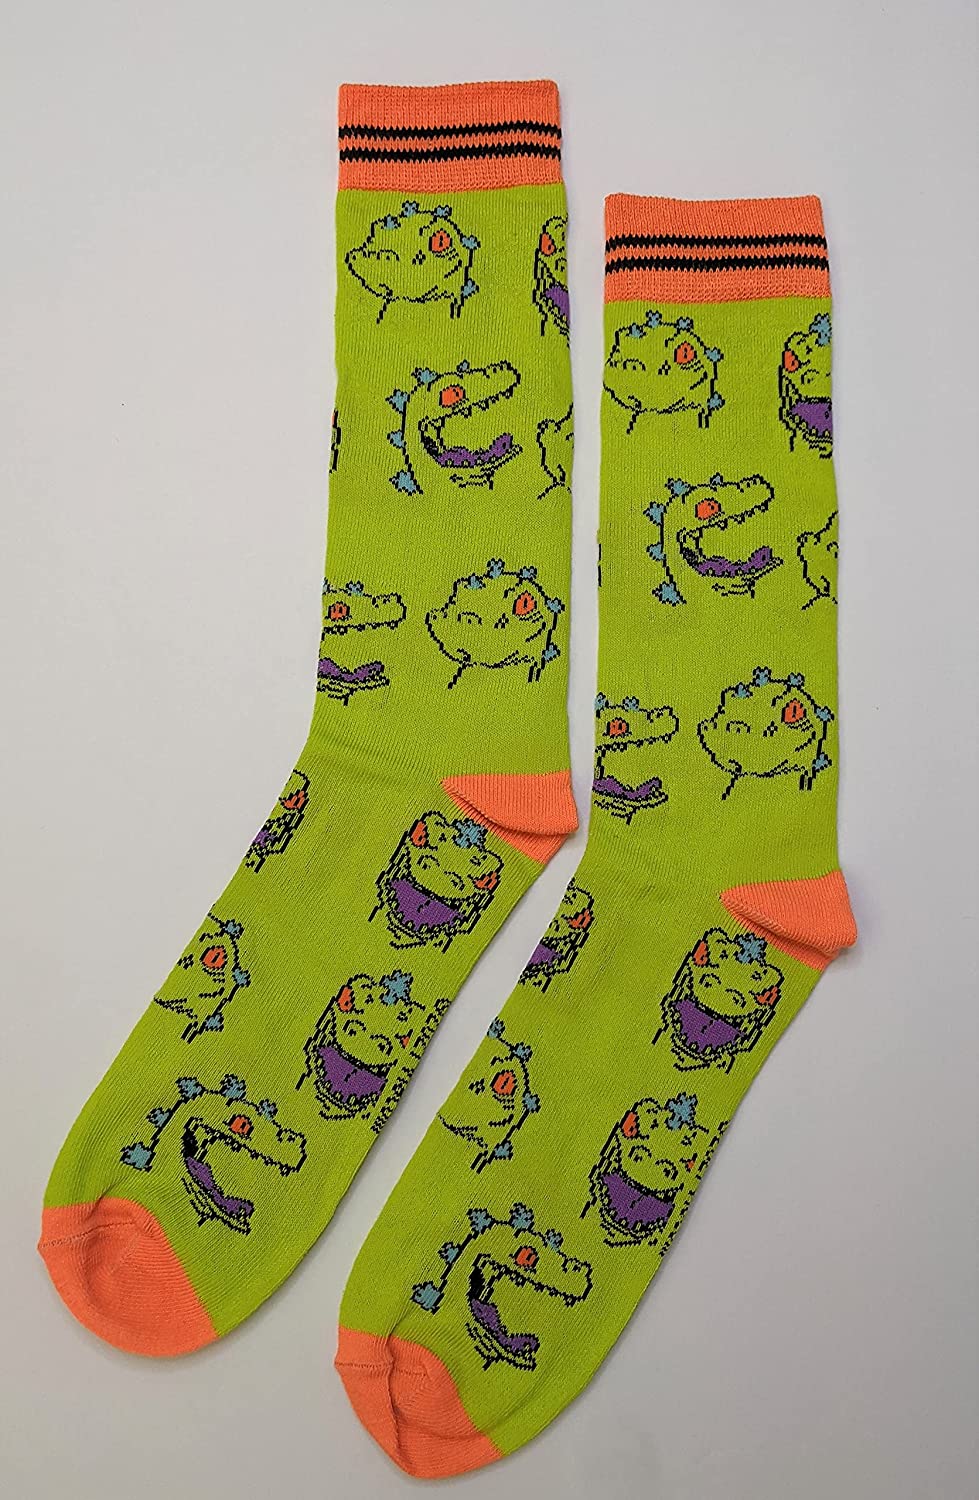 Nickelodeon Rugrats Reptar Men's Crew Socks Two Pair Pack